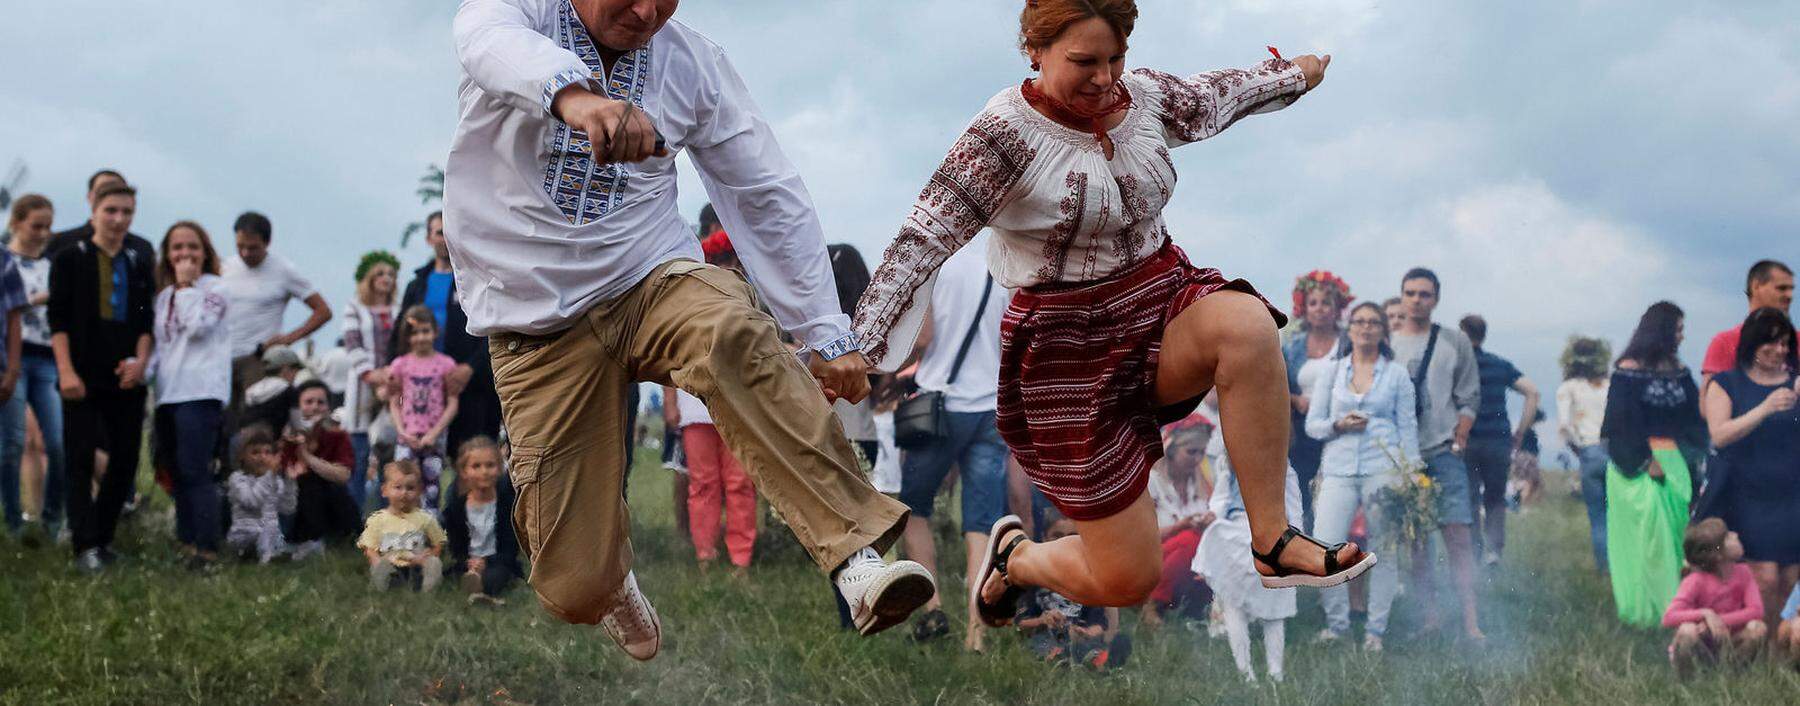 Sehen so Neonazis aus? Die Ukrainer feiern die Sommersonnenwende am Tag von Iwan Kupala (Johannes dem Täufer) entsprechend dem Gregorianischen Kalender am 7. Juli.